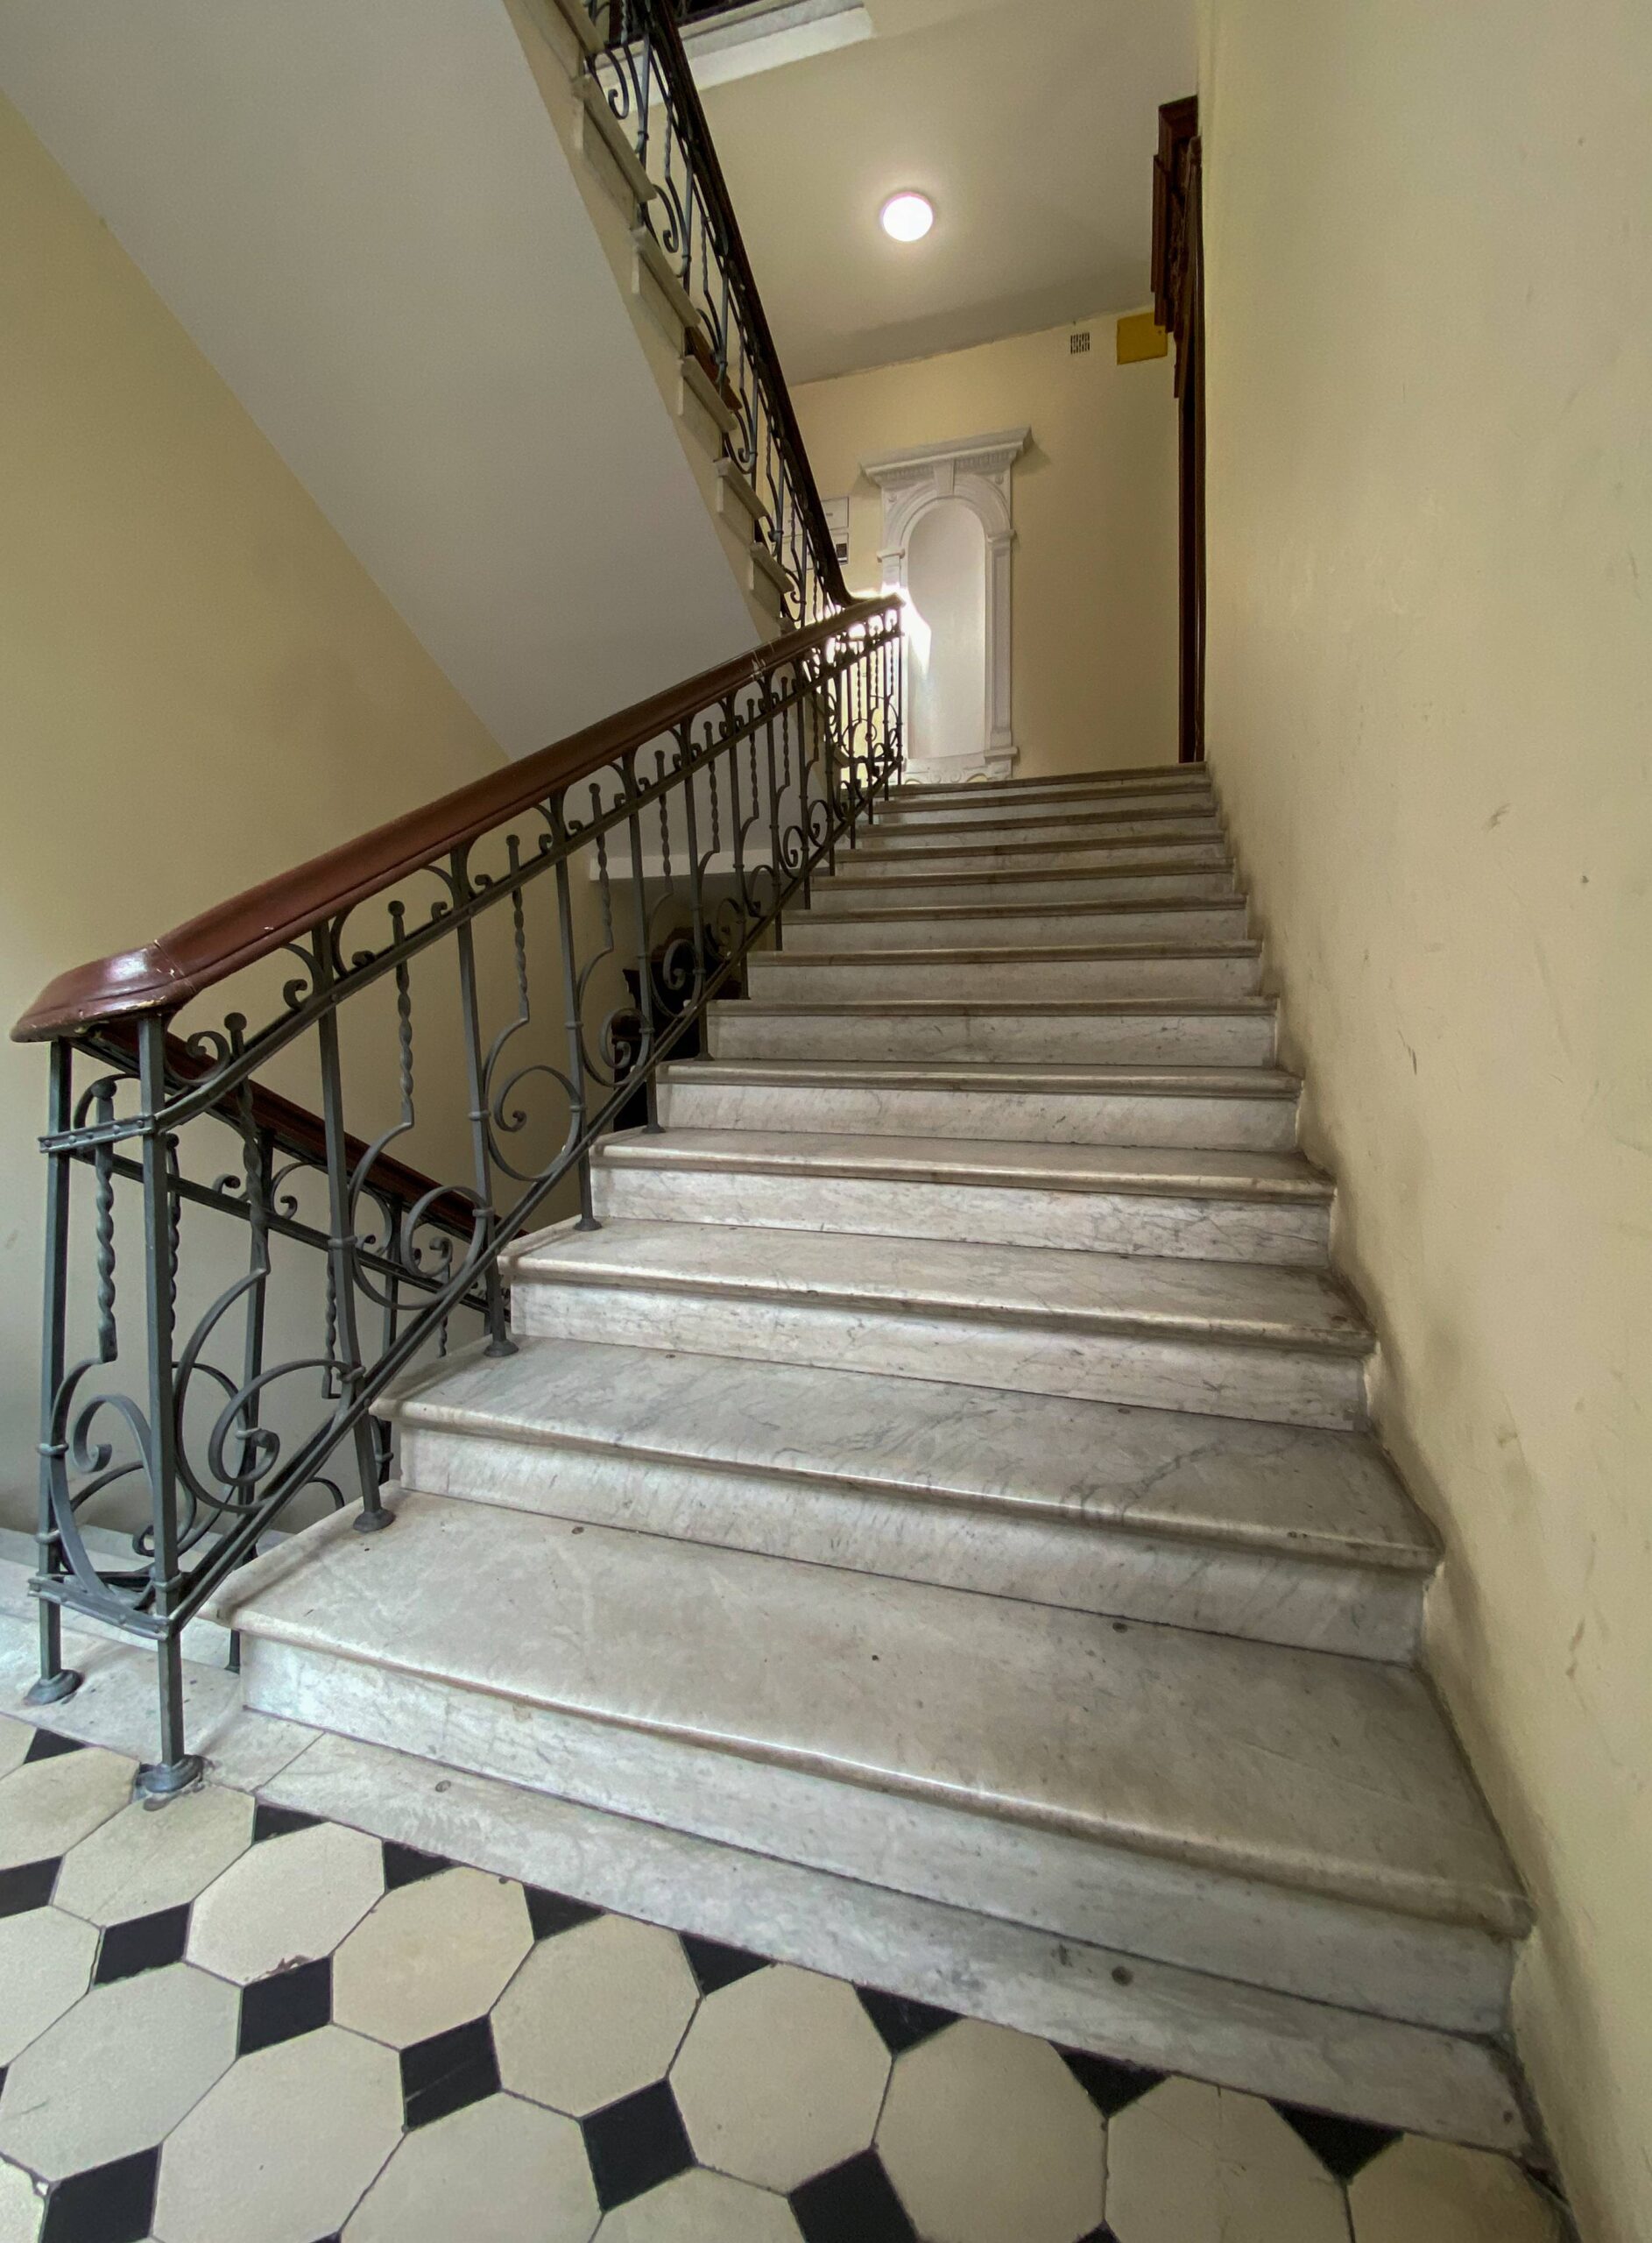 Główna klatka schodowa. Balustrada (kuta). Marmurowe schody. Fot. Wojciech Kmieć 2022 r., źródło: AOD III.